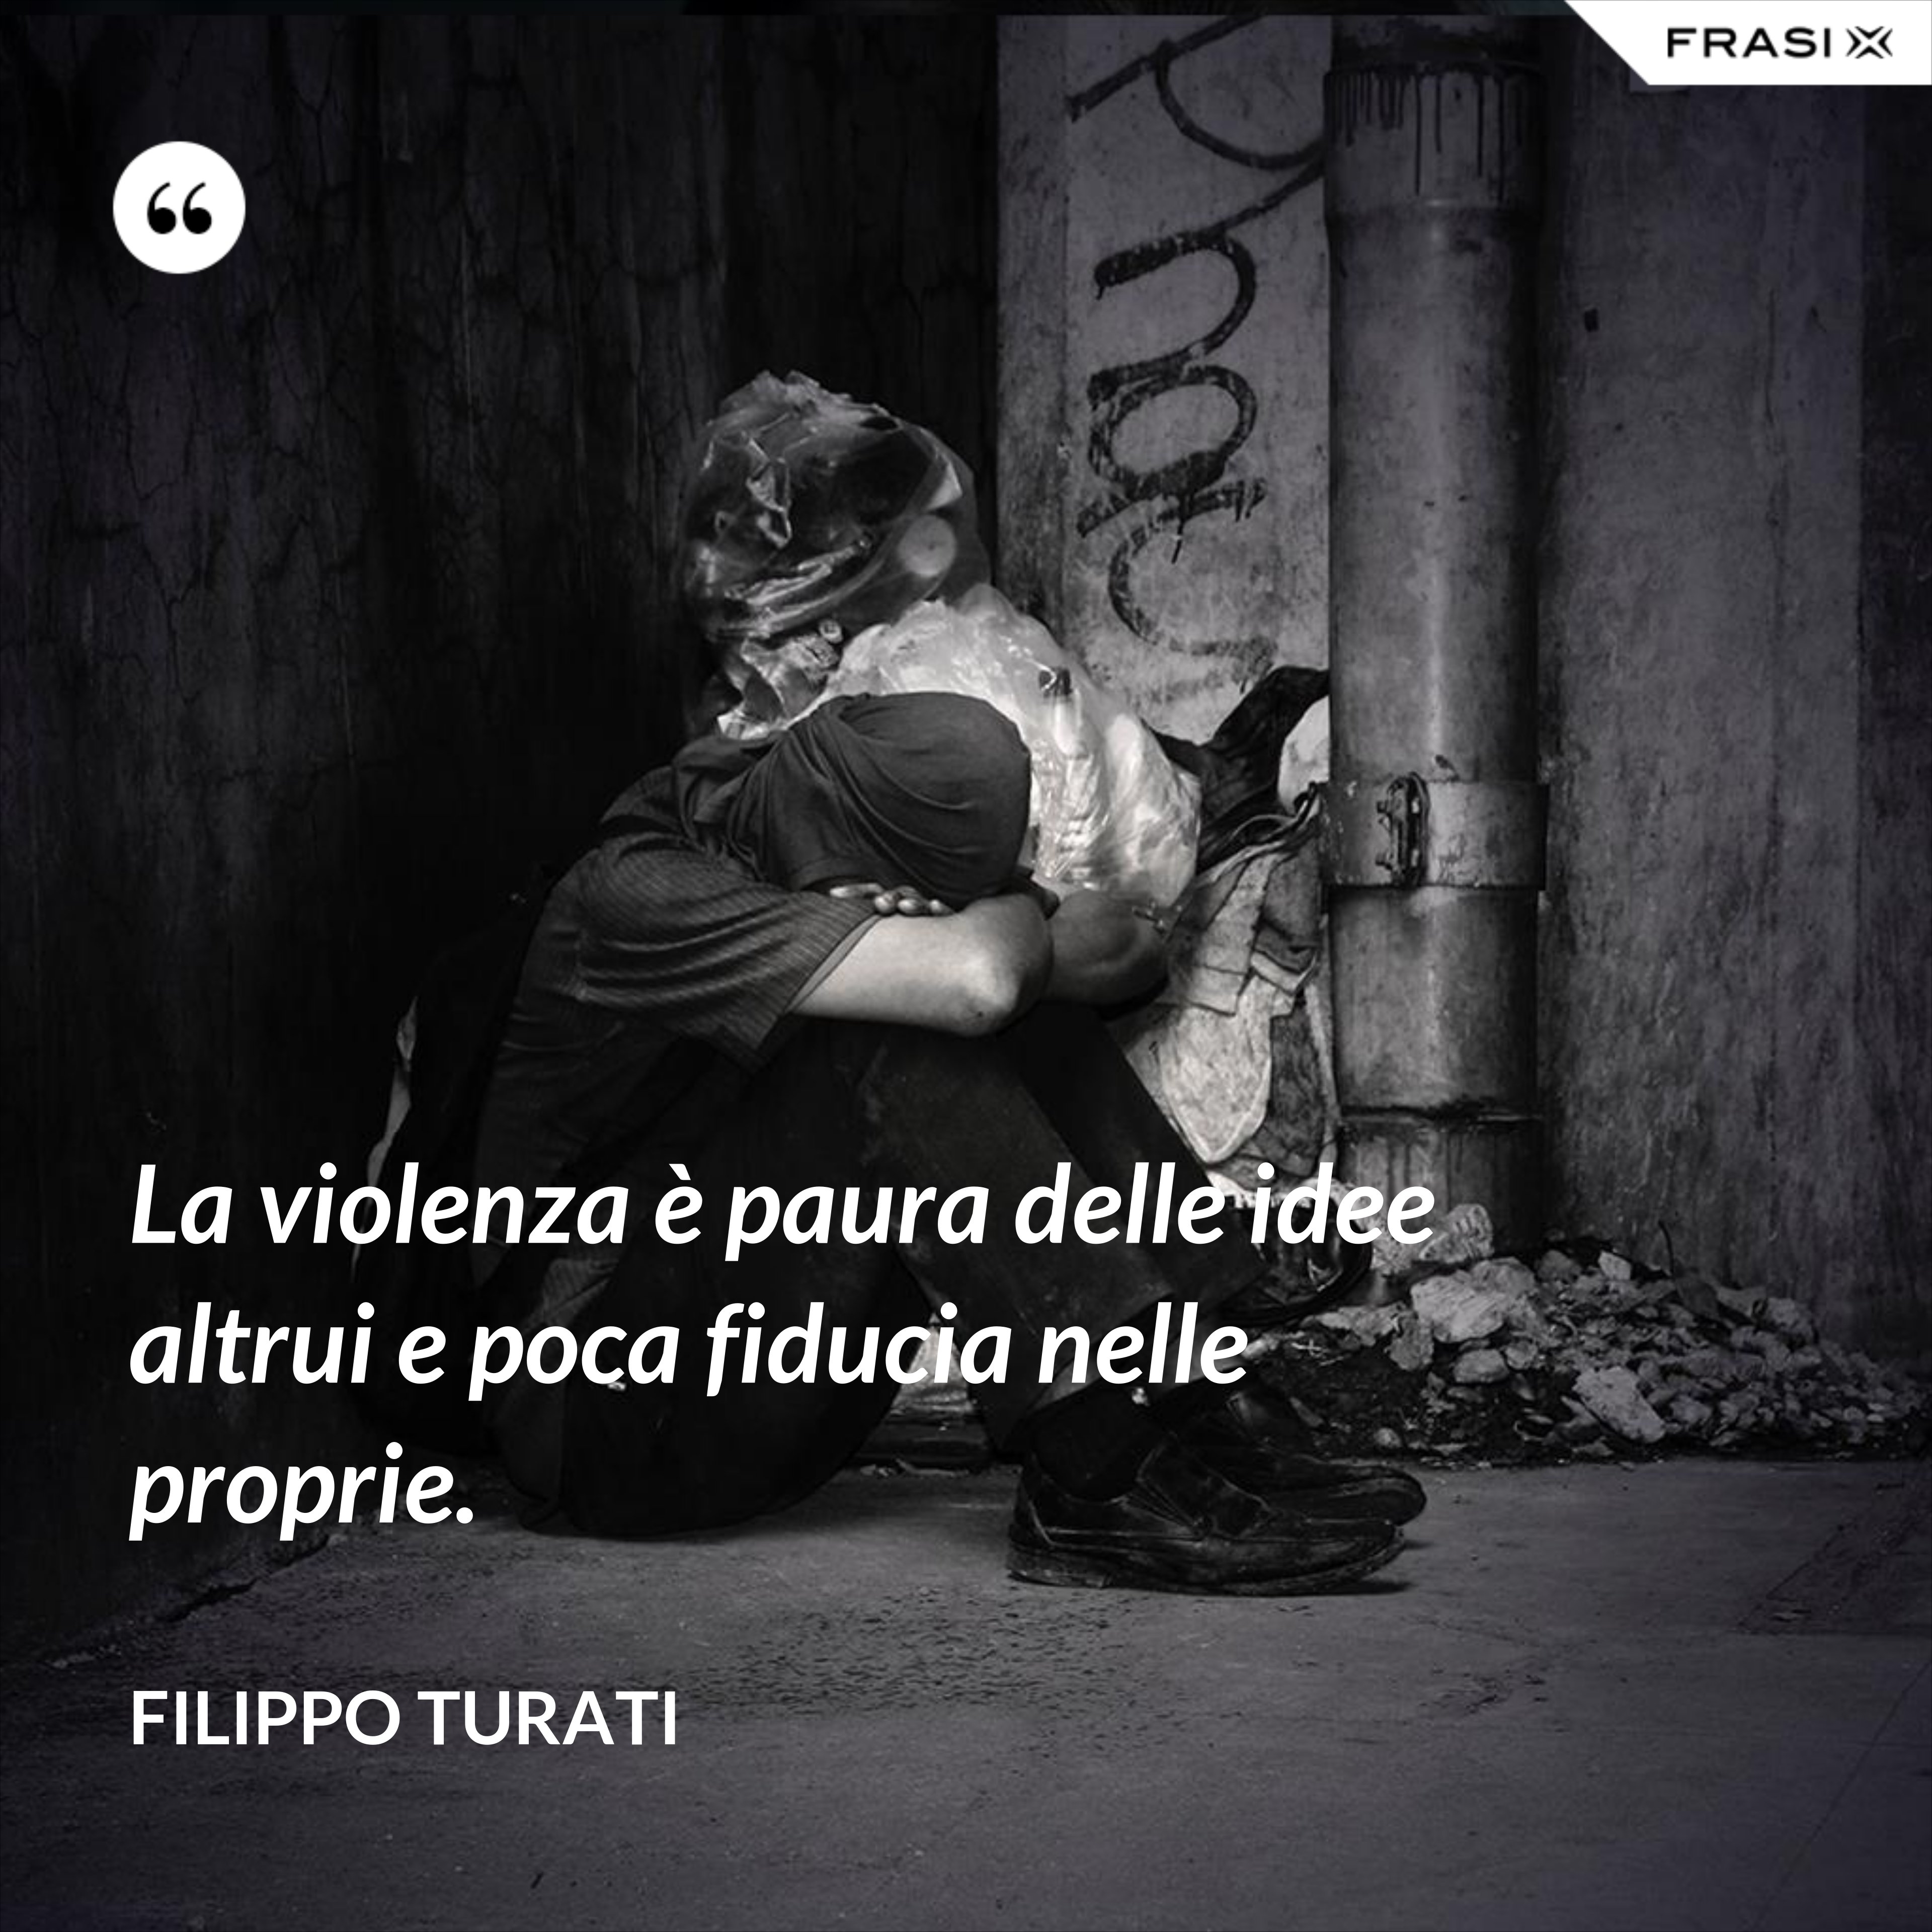 La violenza è paura delle idee altrui e poca fiducia nelle proprie. - Filippo Turati